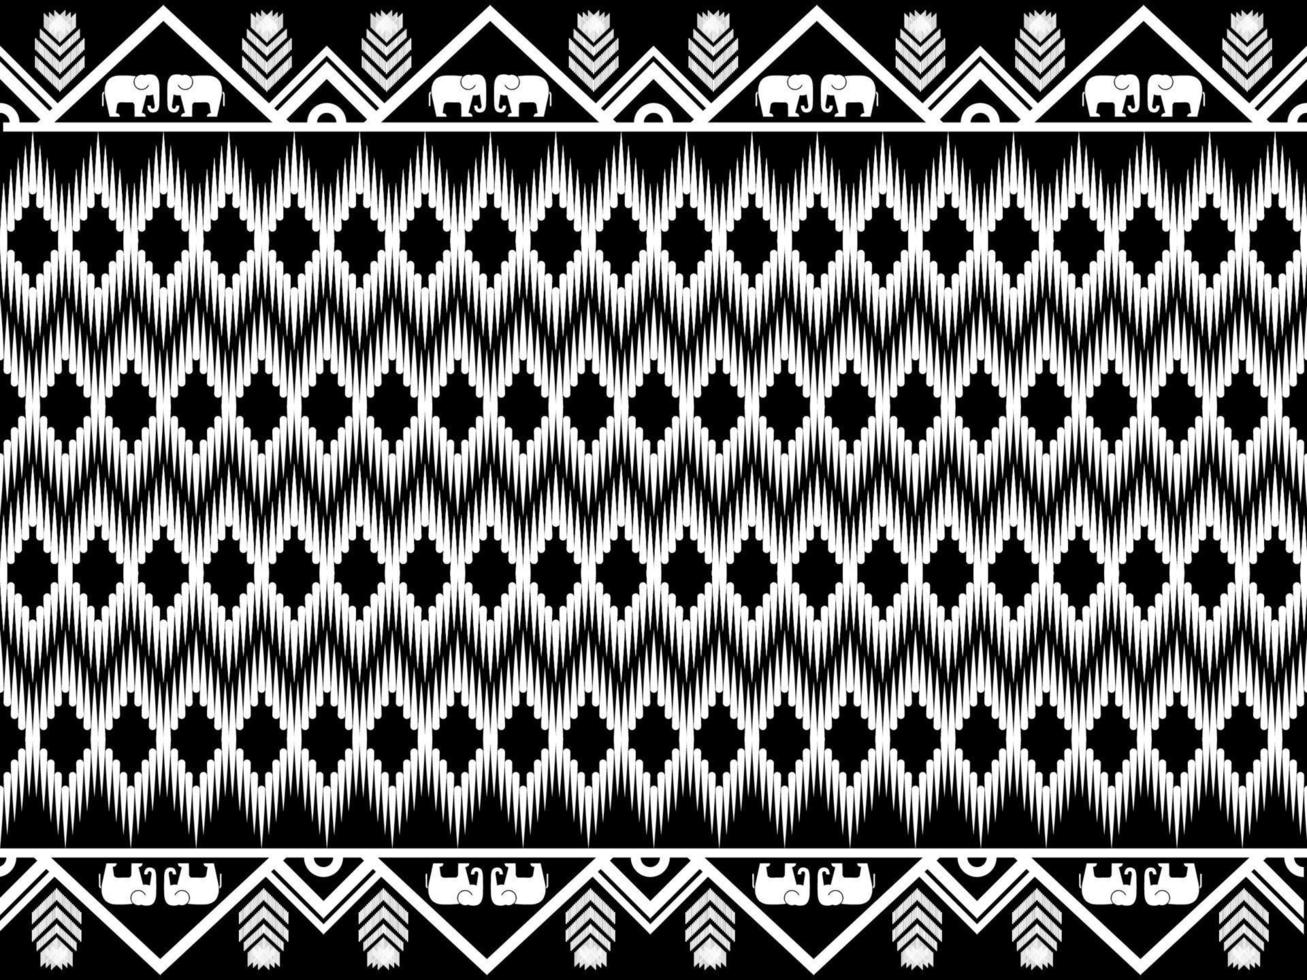 orientalisches ethnisches geometrisches muster südafrika traditionelles design für hintergrundteppich, tapete, hemd, batik, muster, vektor, illustration, stickerei vektor